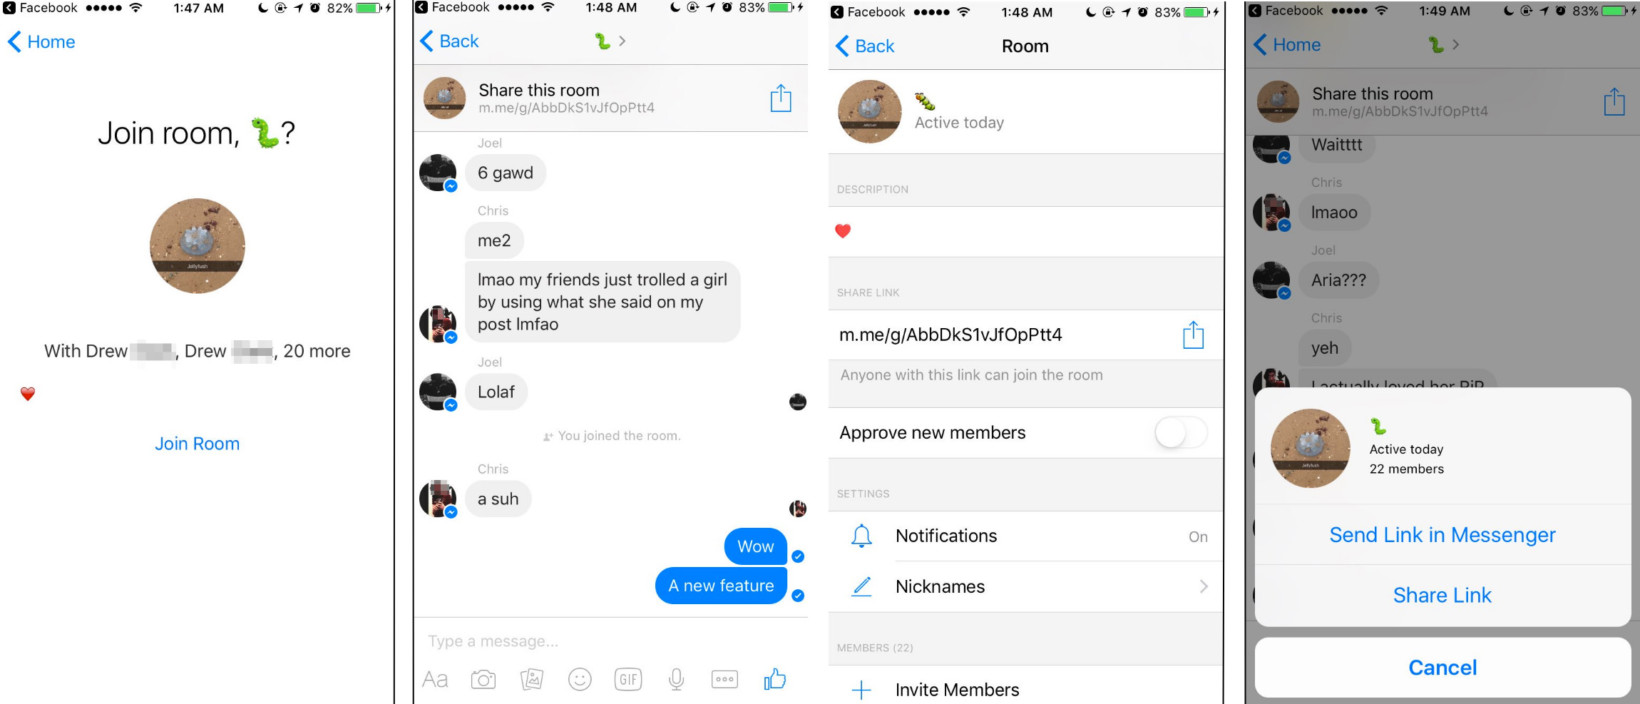 Facebook Messenger Rooms screenshots